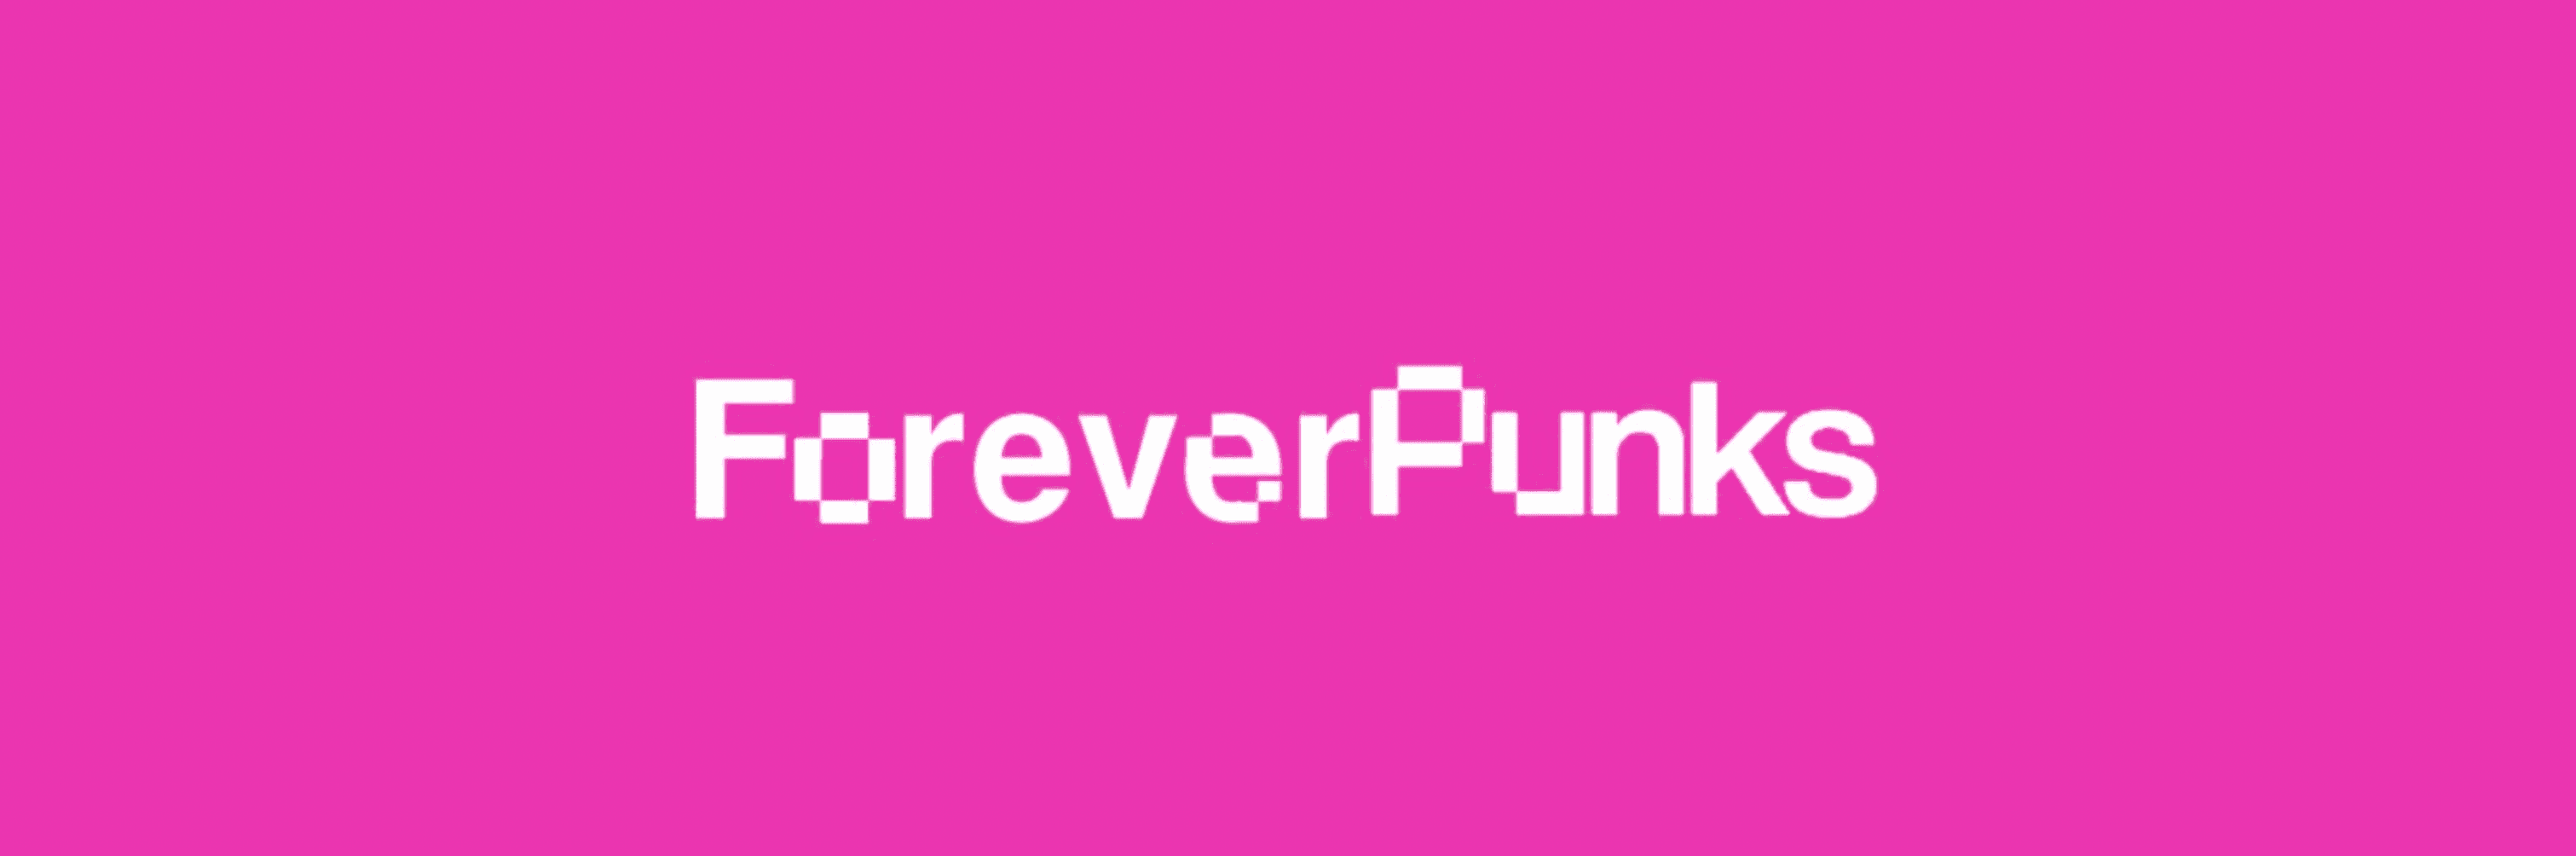 Foreverpunks-Community-Pass バナー